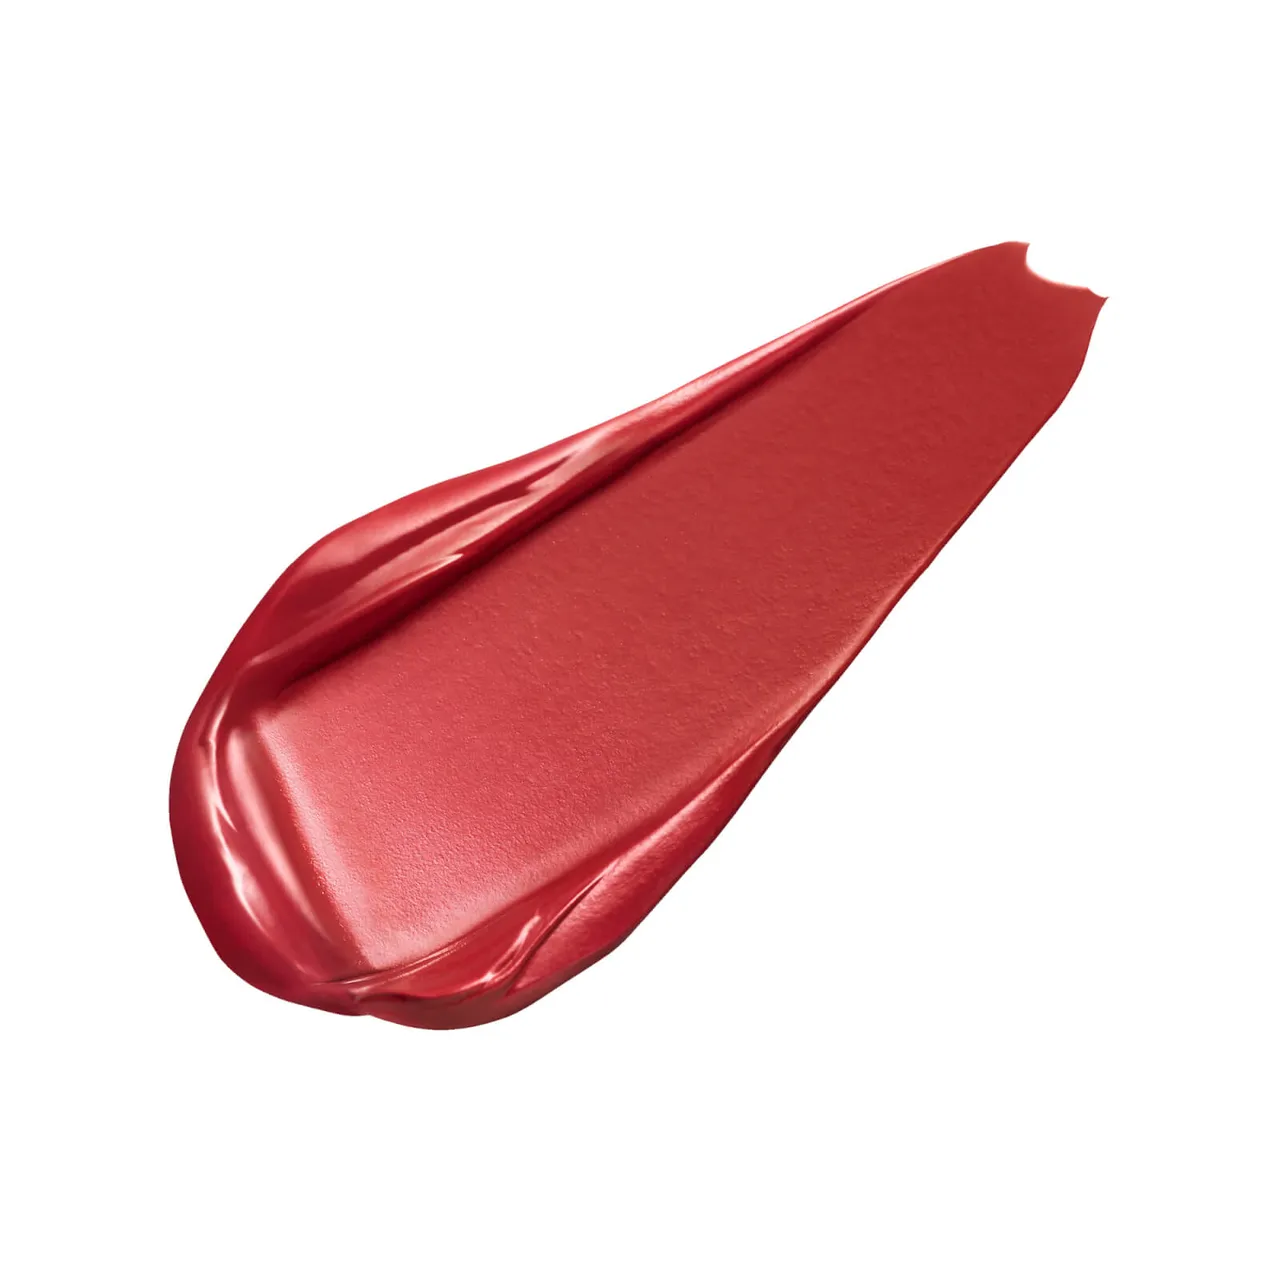 Clé de Peau Beauté Exclusive Cream Rouge Shine Lipstick 8ml (Various Shades) - 205 Cuphea